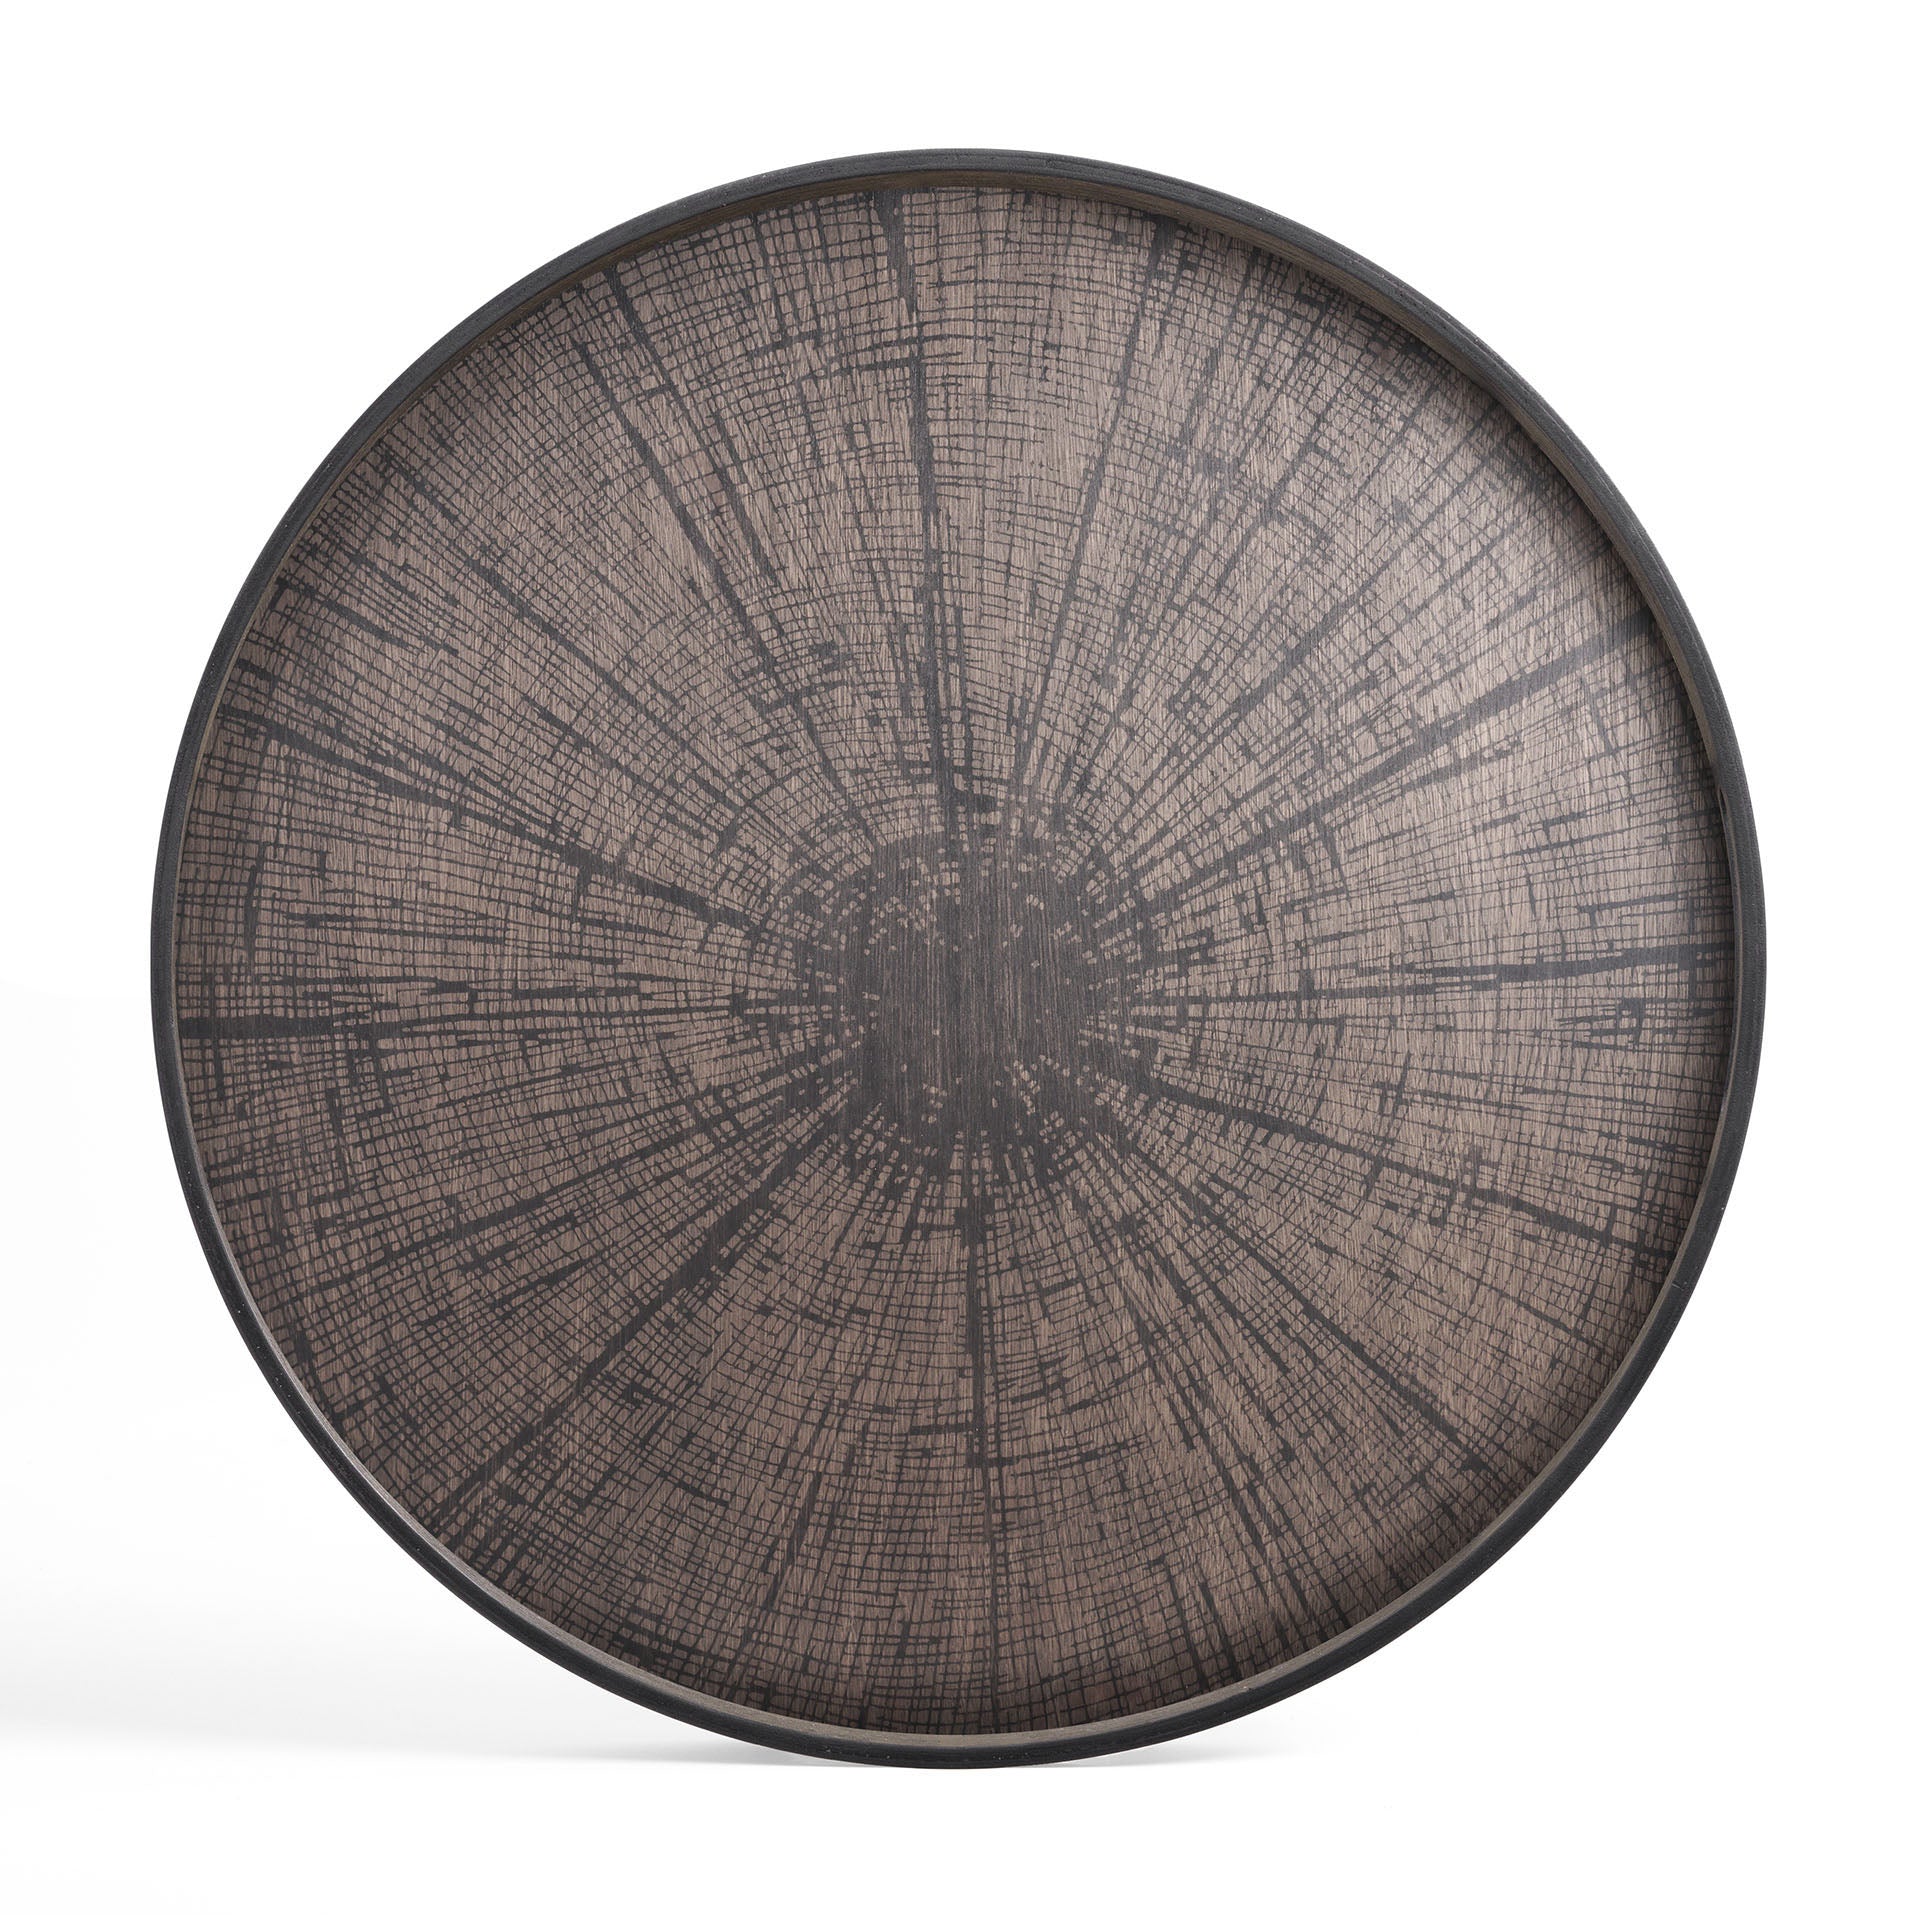 Round Black Slice Varnished Wood Tray, Extra Large